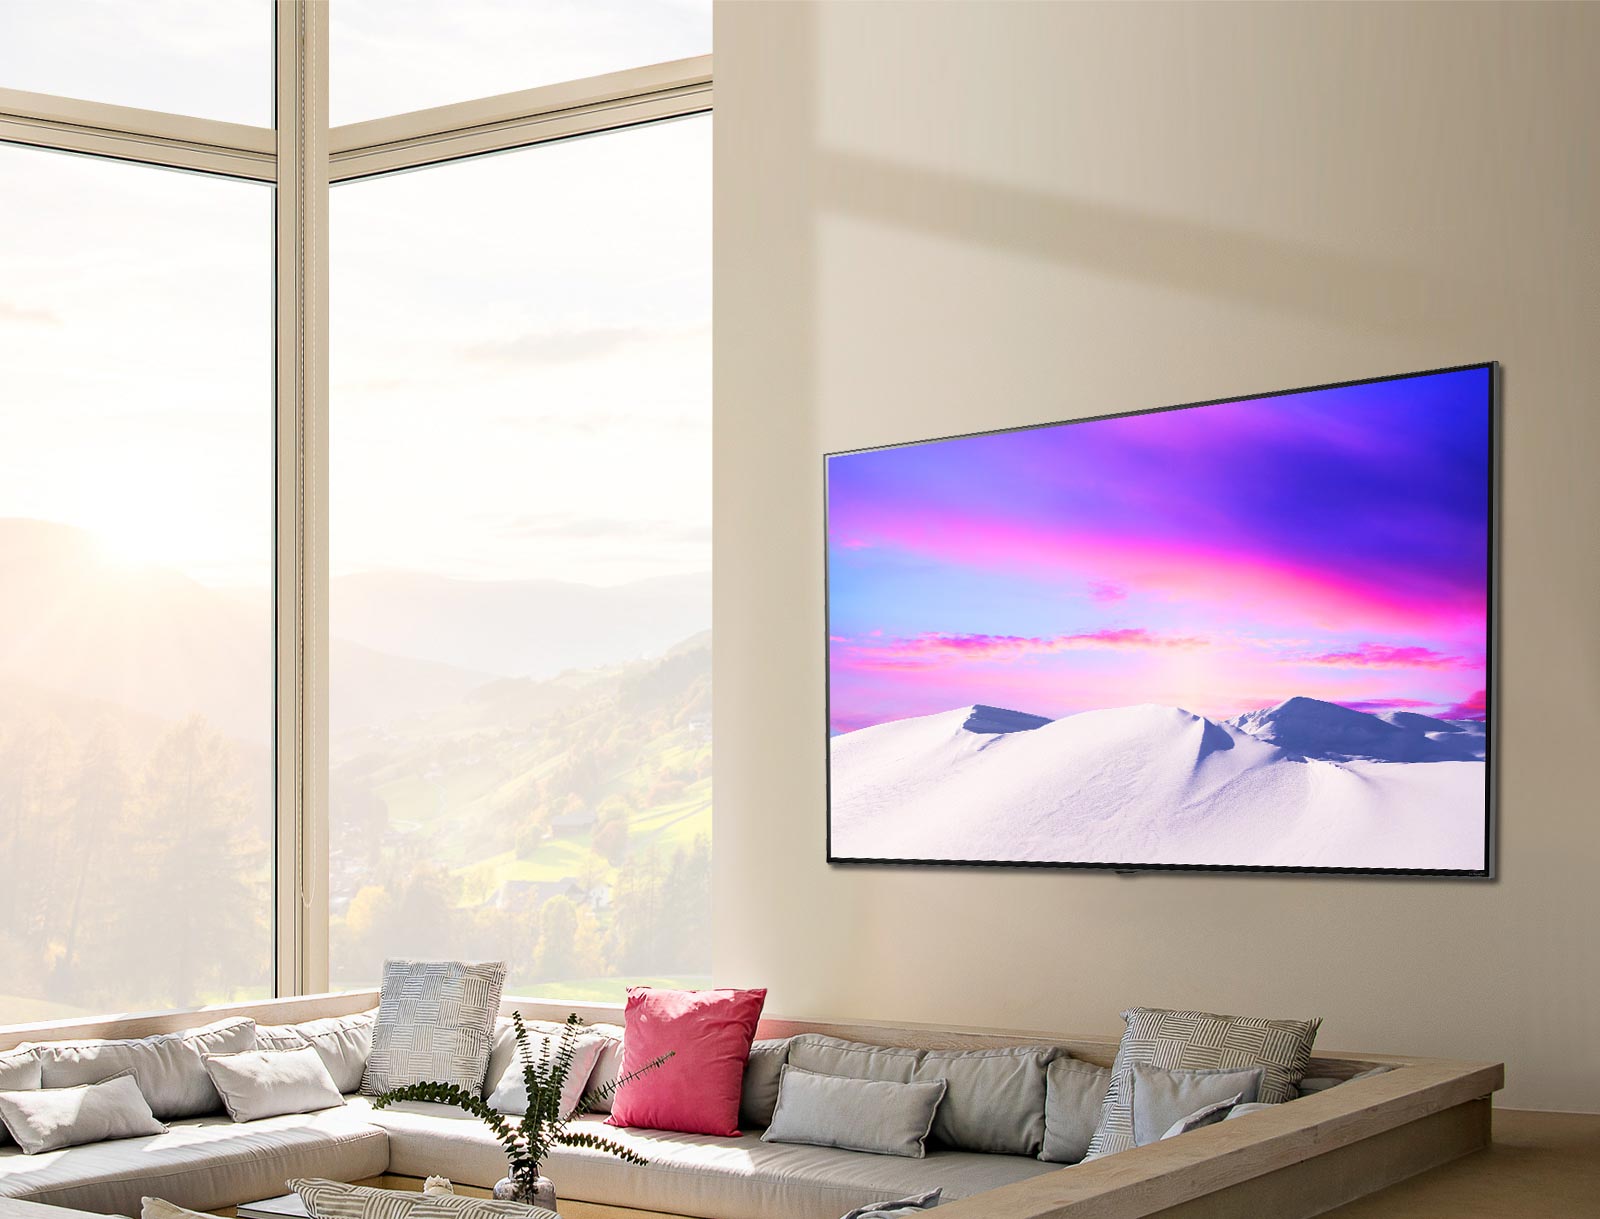 Prizor velikega in tankega televizorja LG NanoCell, ki visi naravnost ob steno.